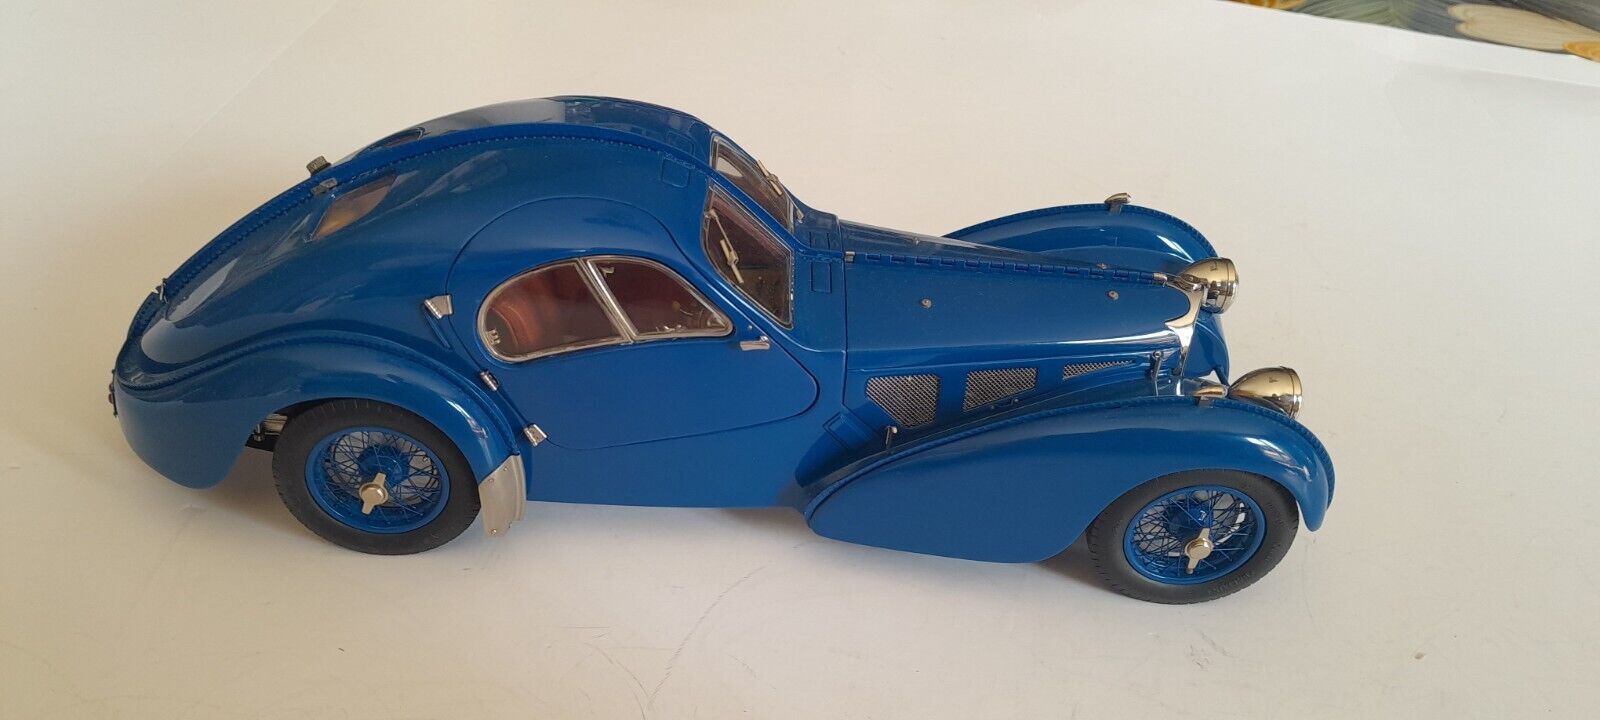 BugattiPage modelstore